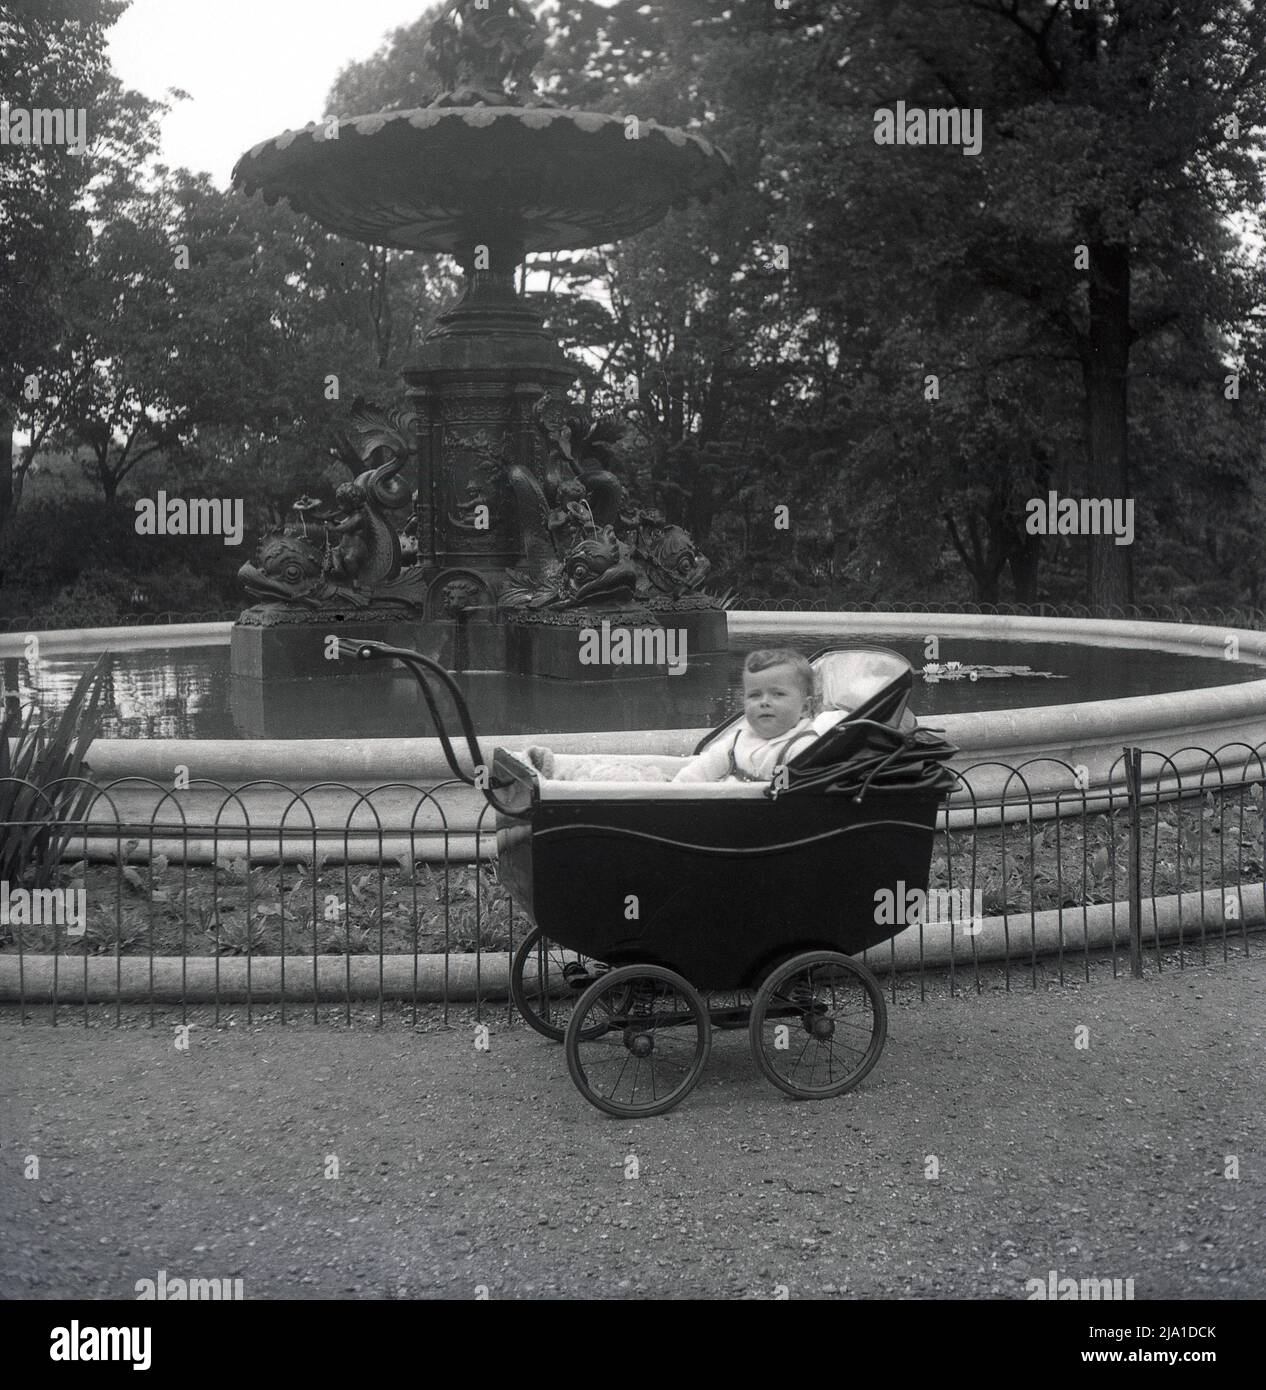 1950s, historique, un enfant en bas âge assis dans un petit pram de l'époque construit par un autocar à roues, à côté de la fontaine John Woodward Memorial à Dane Park, Margate, Kent, Angleterre, Royaume-Uni. La fontaine en fonte a été érigée en 1896 à la mémoire du don de la terre sur laquelle le parc a été créé. Banque D'Images